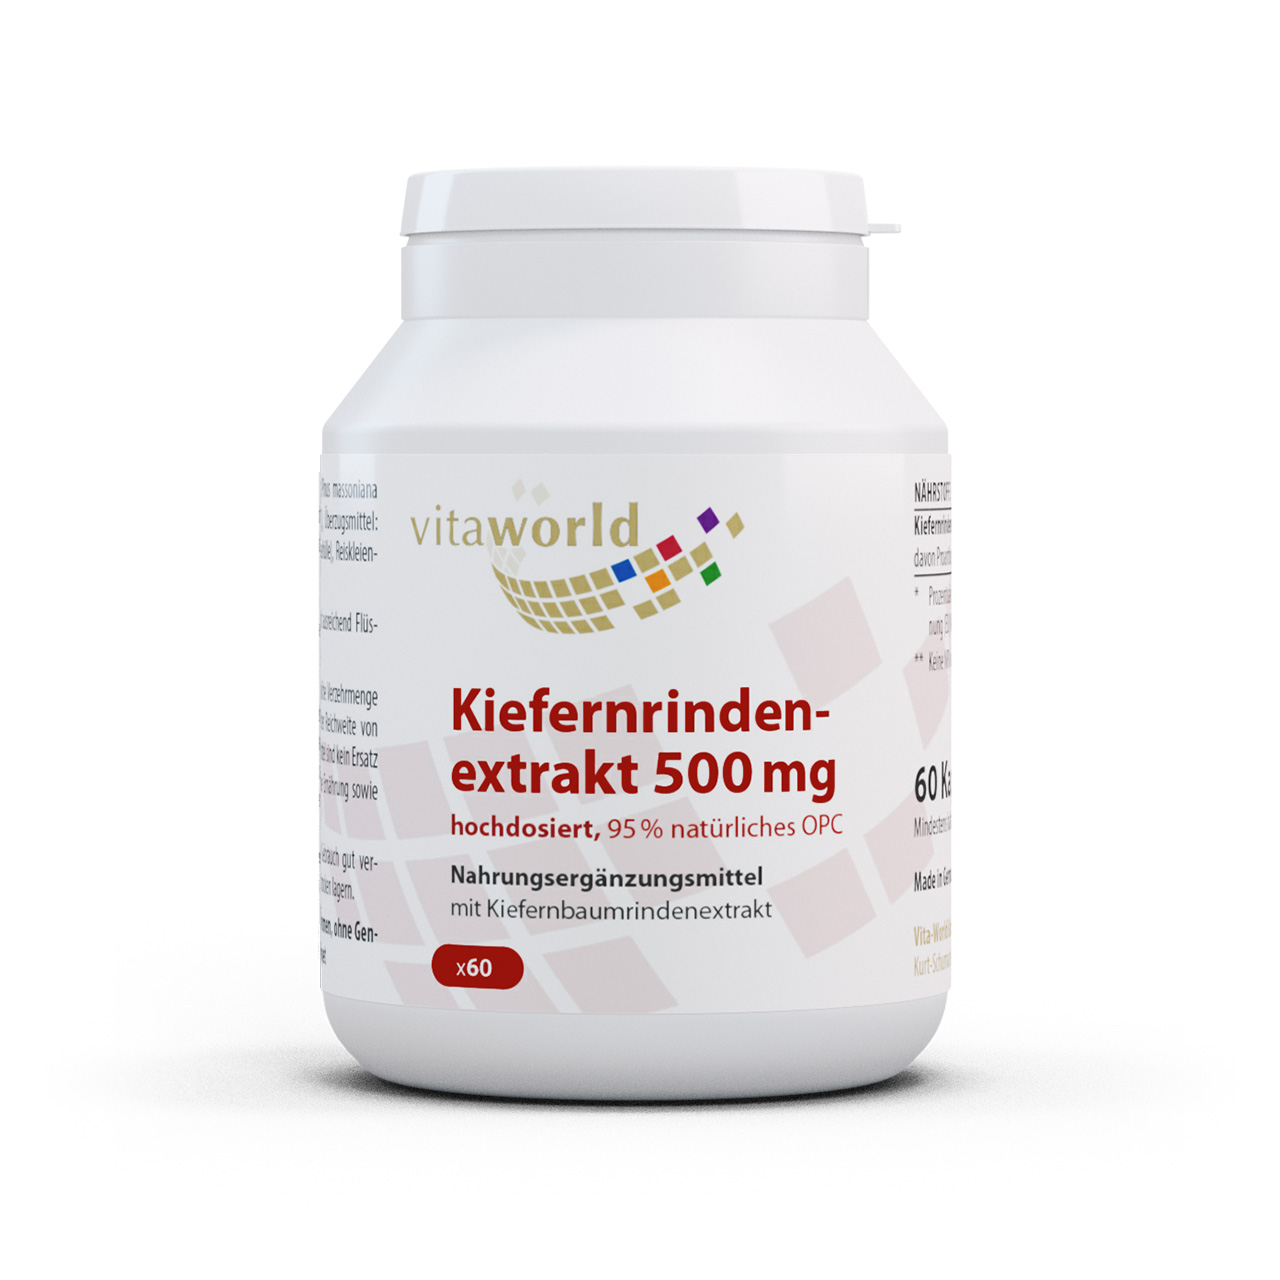 Vitaworld Kiefernrindenextrakt 500 mg | 60 Kapseln | 95 % natürliches OPC | hochdosiert | vegan | gluten- und laktosefrei